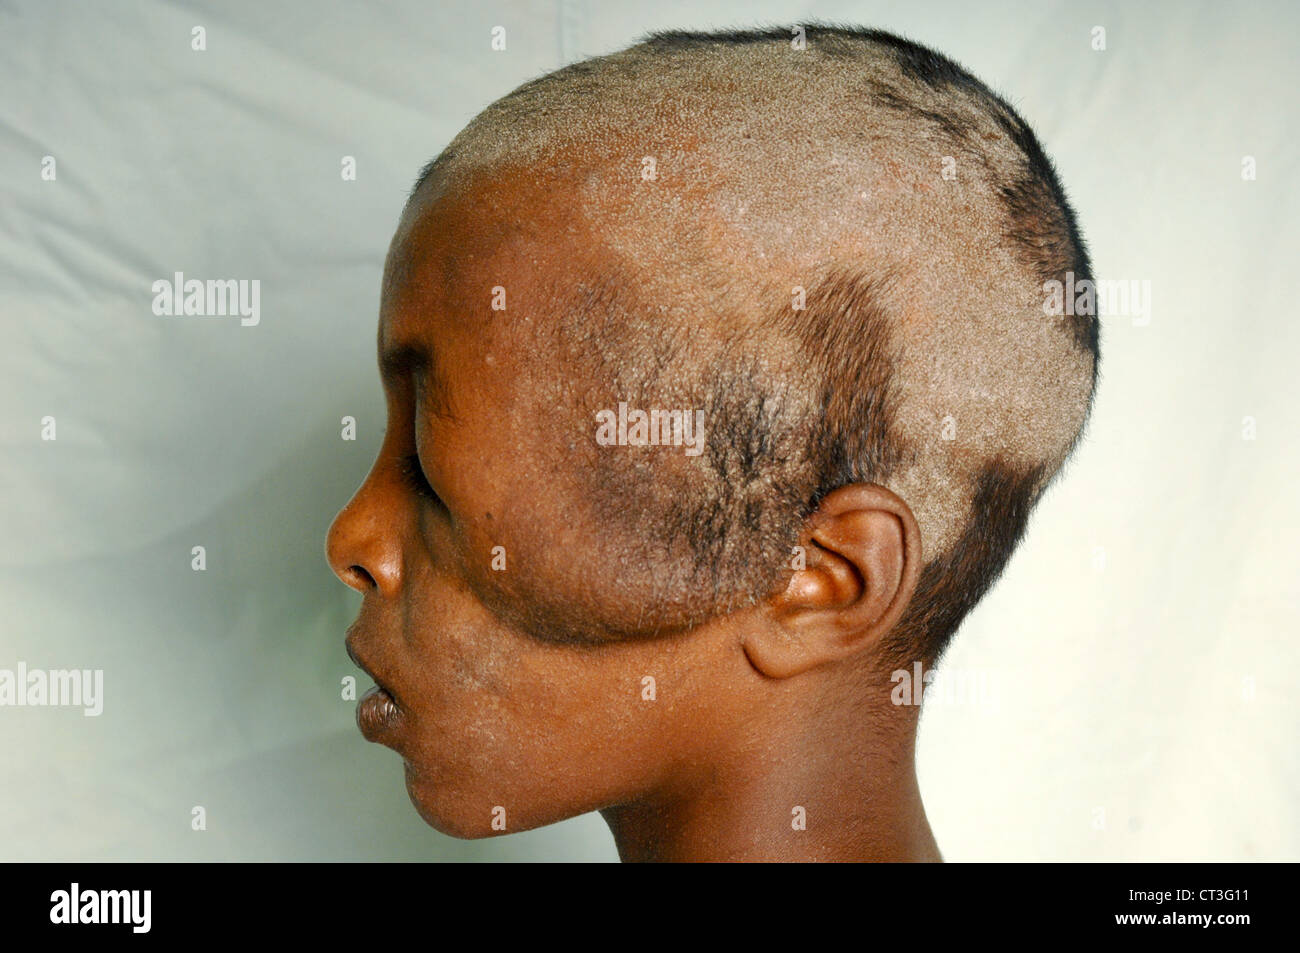 Seitenansicht eines 13 Jahre alten männlichen Neuro Hämangiom und Tinea Capitis - Soba, Sudan leiden. Tinea Capitis ist eine Pilzinfektion der Kopfhaut, besser bekannt als Scherpilzflechte. Stockfoto